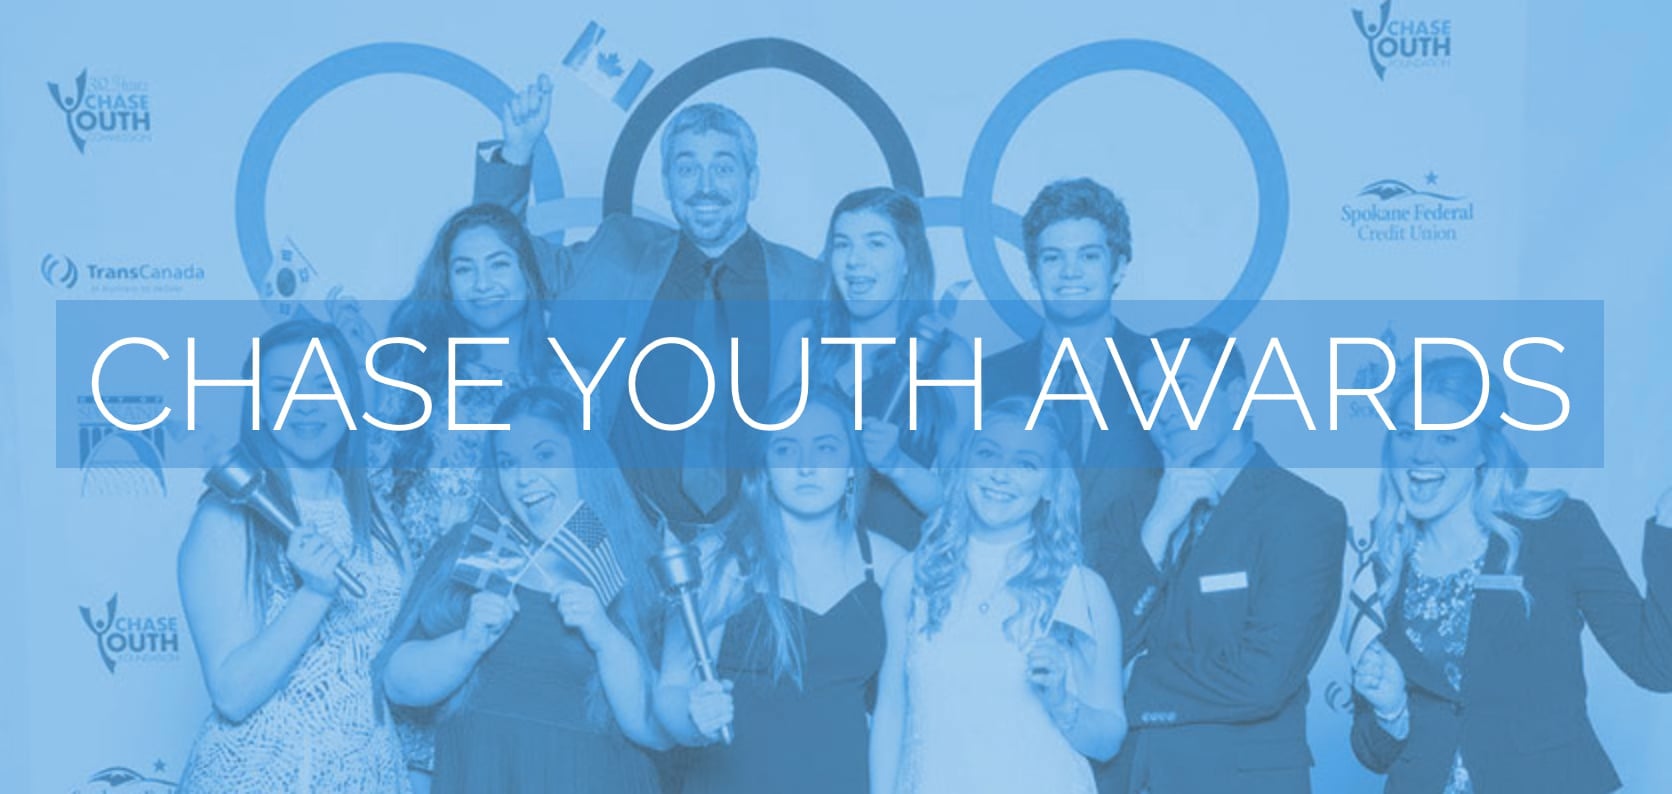 Chase Youth Awards on Vimeo